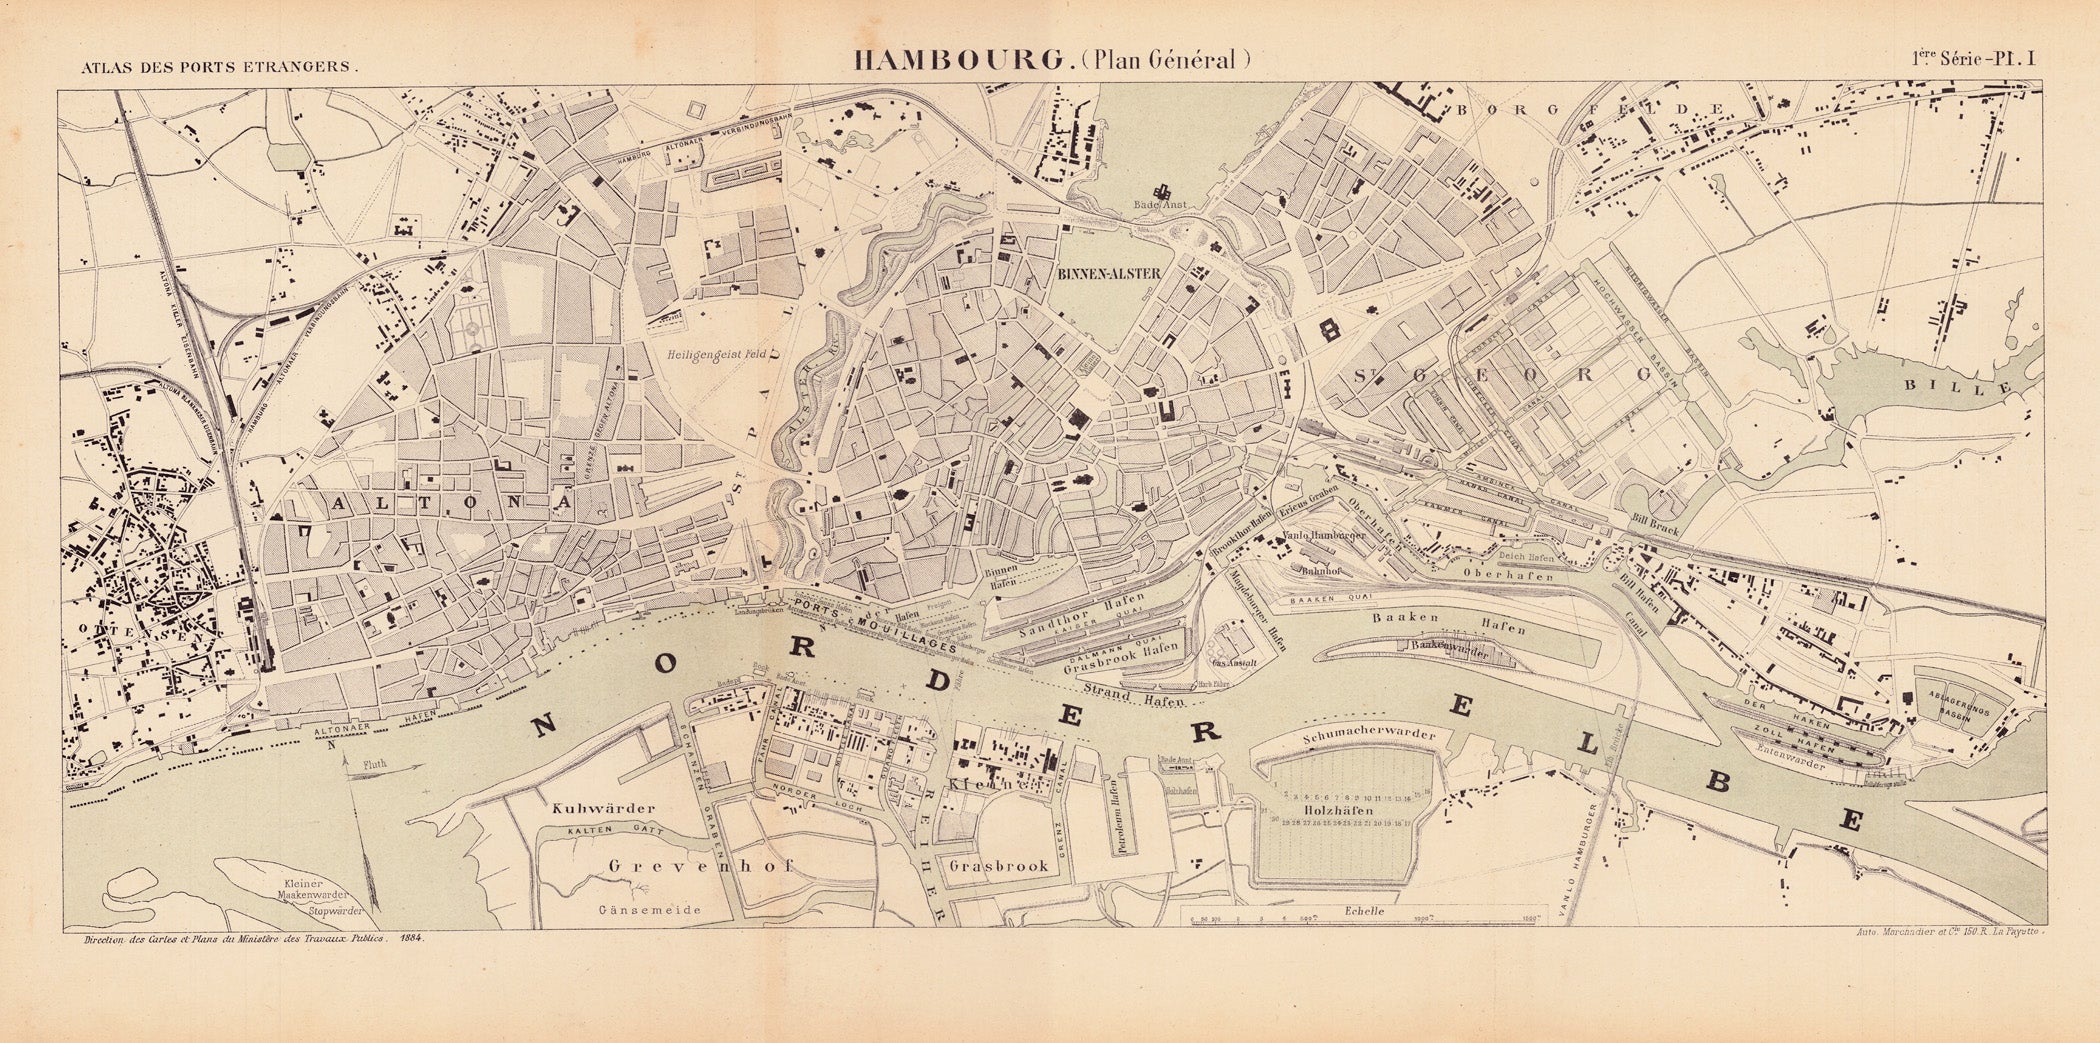 Direction des carles et planes du ministêre des travaux publics : Hambourg (Plan General) 1884